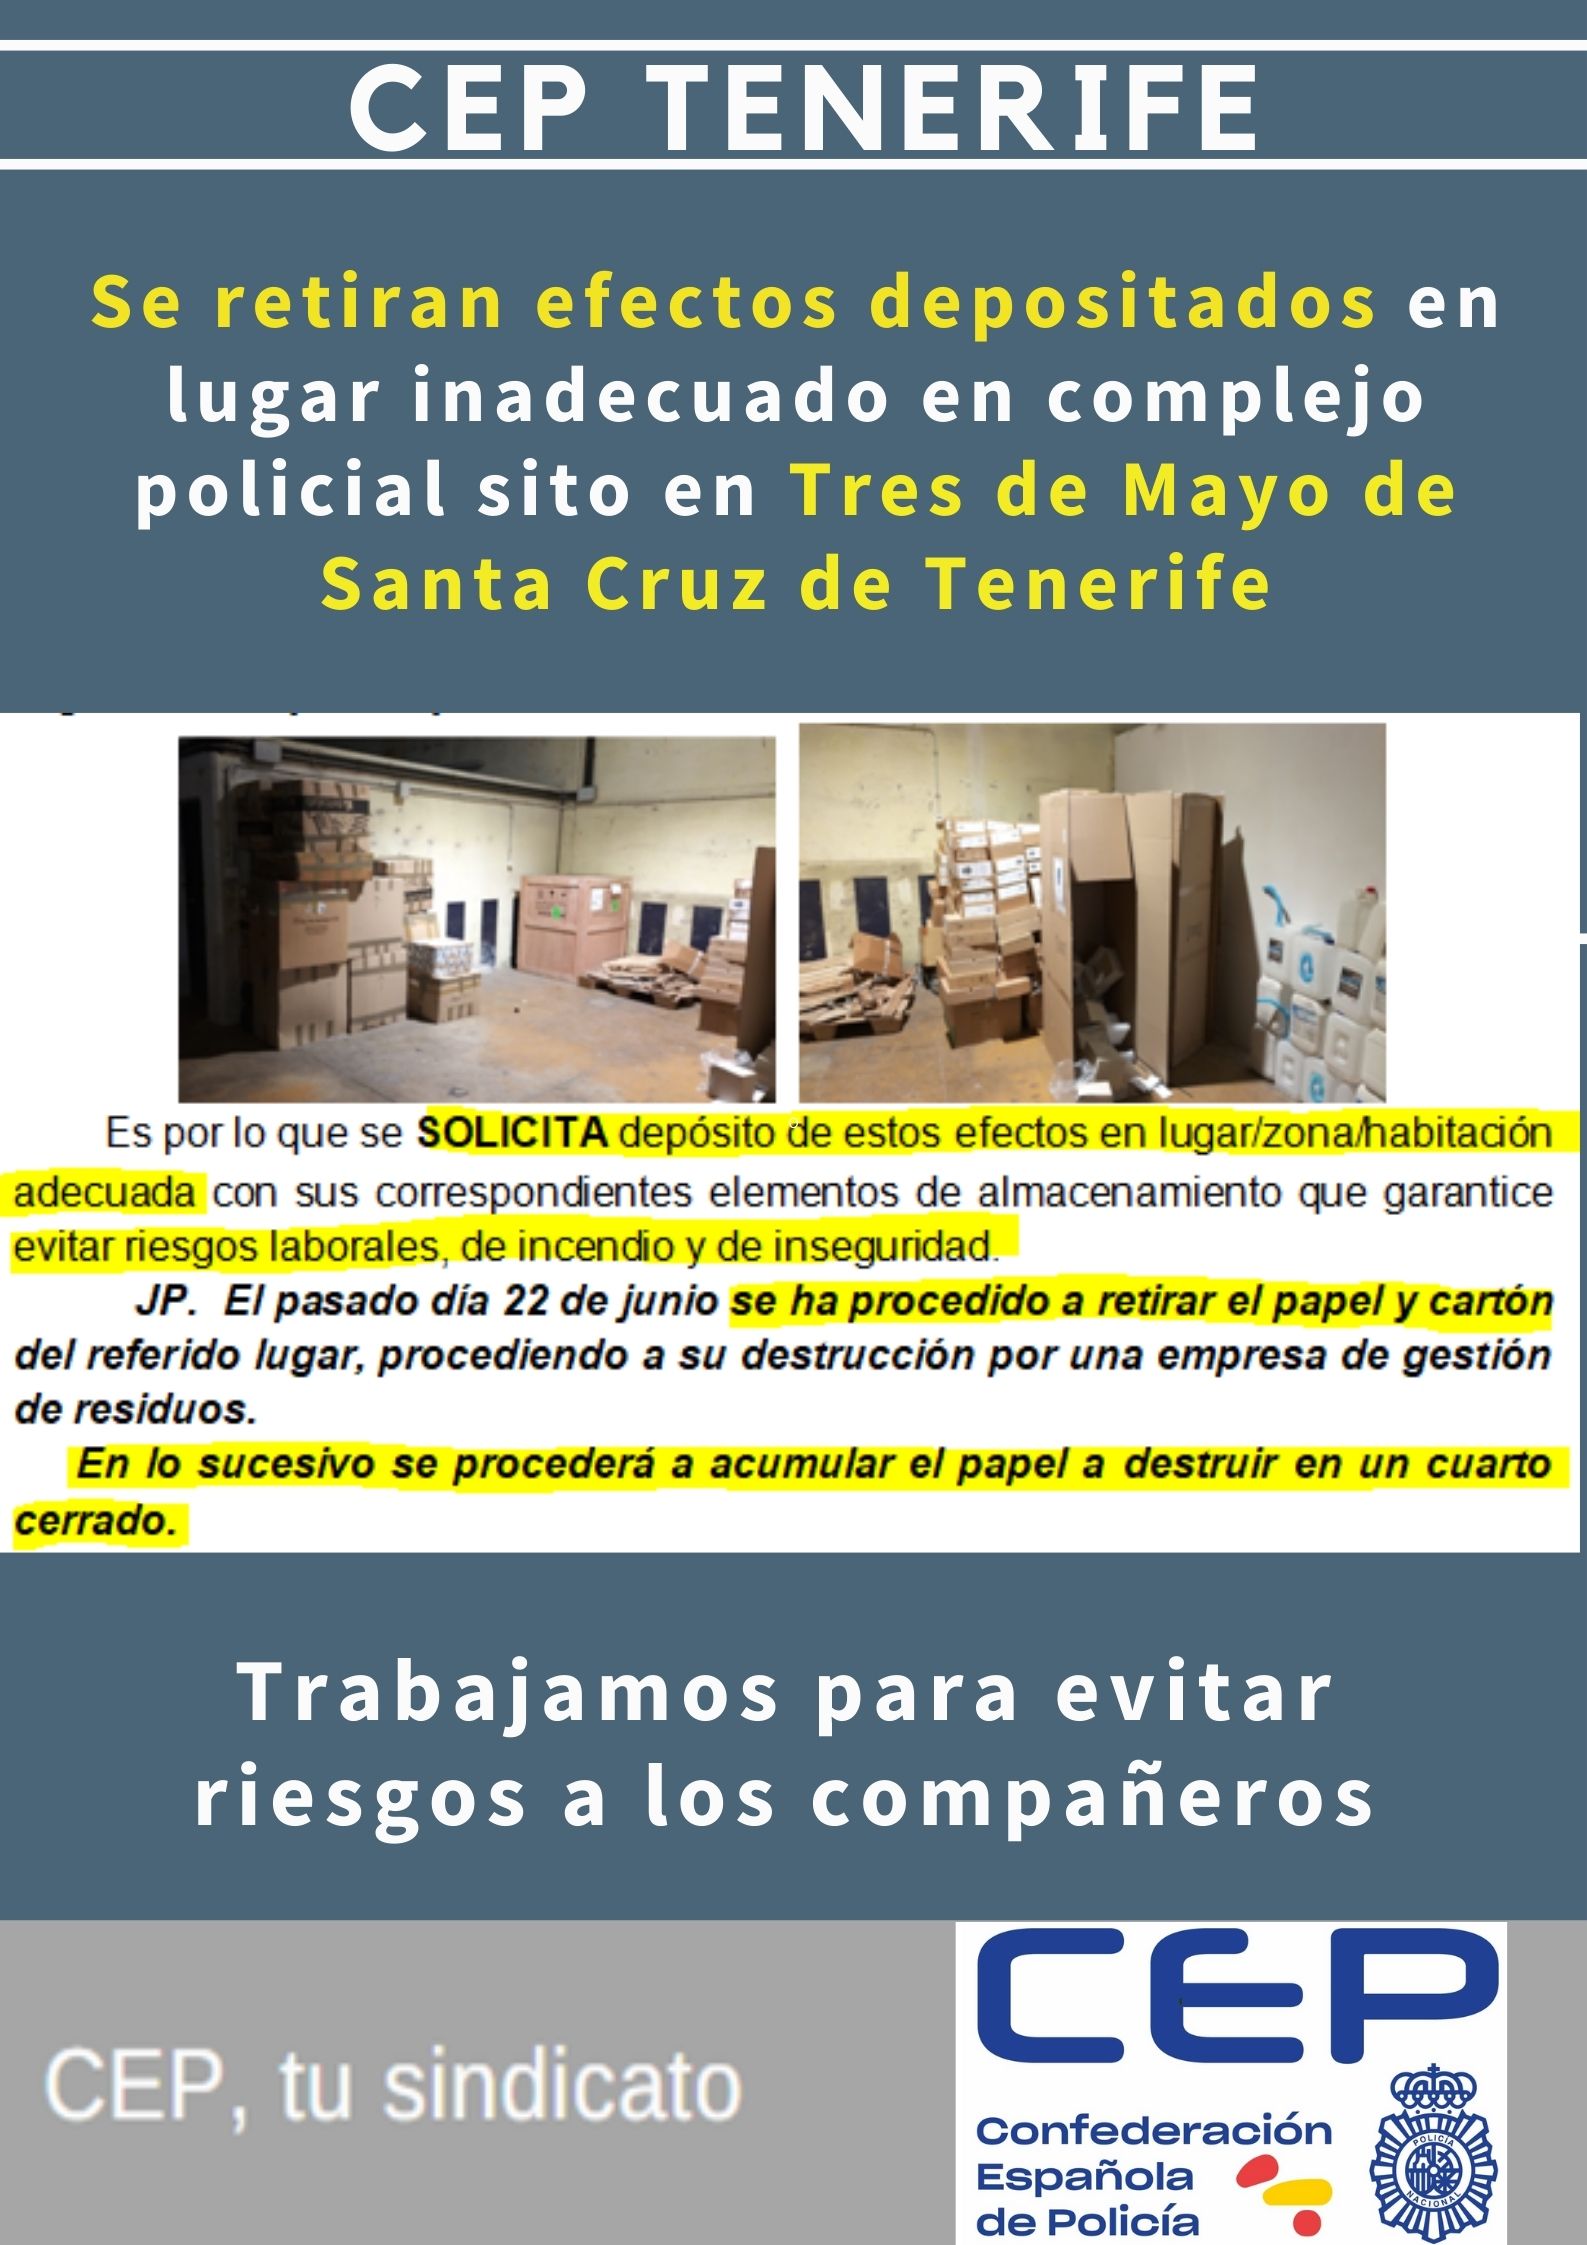 Se retira papel y cartón depositado en lugar inadecuado en Tres de Mayo en Santa Cruz